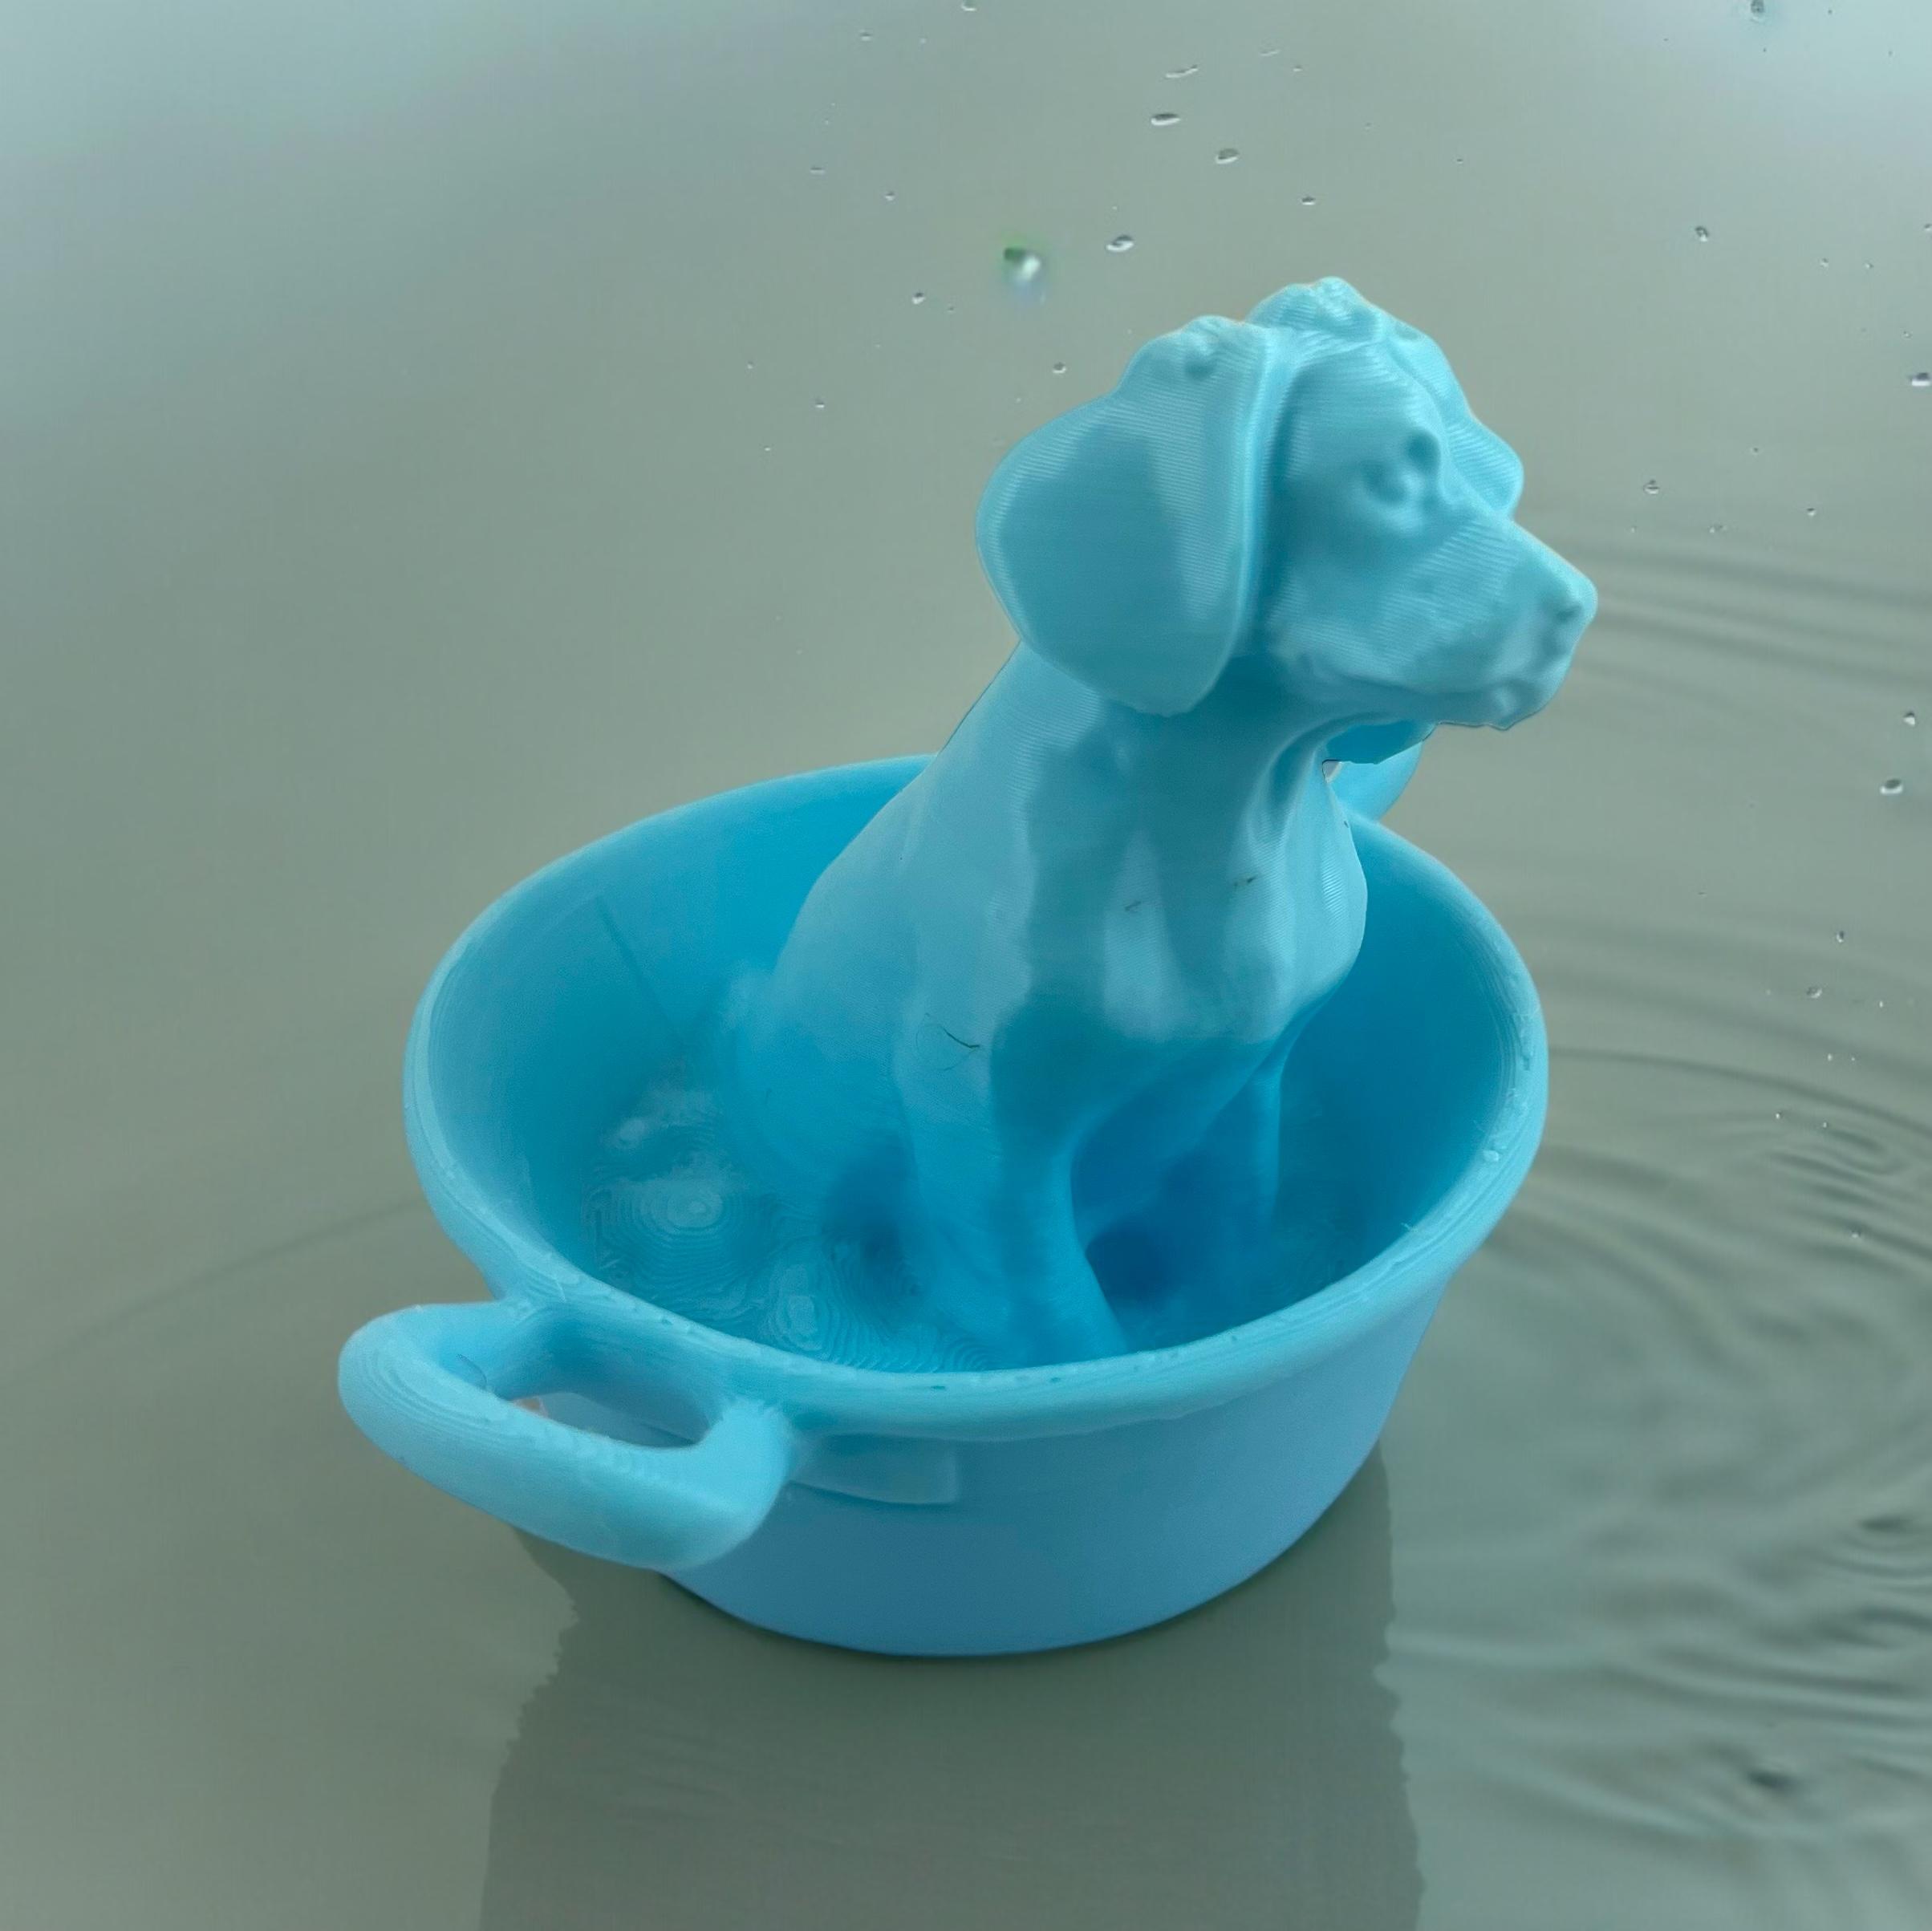 Dog takes a bath 3d model